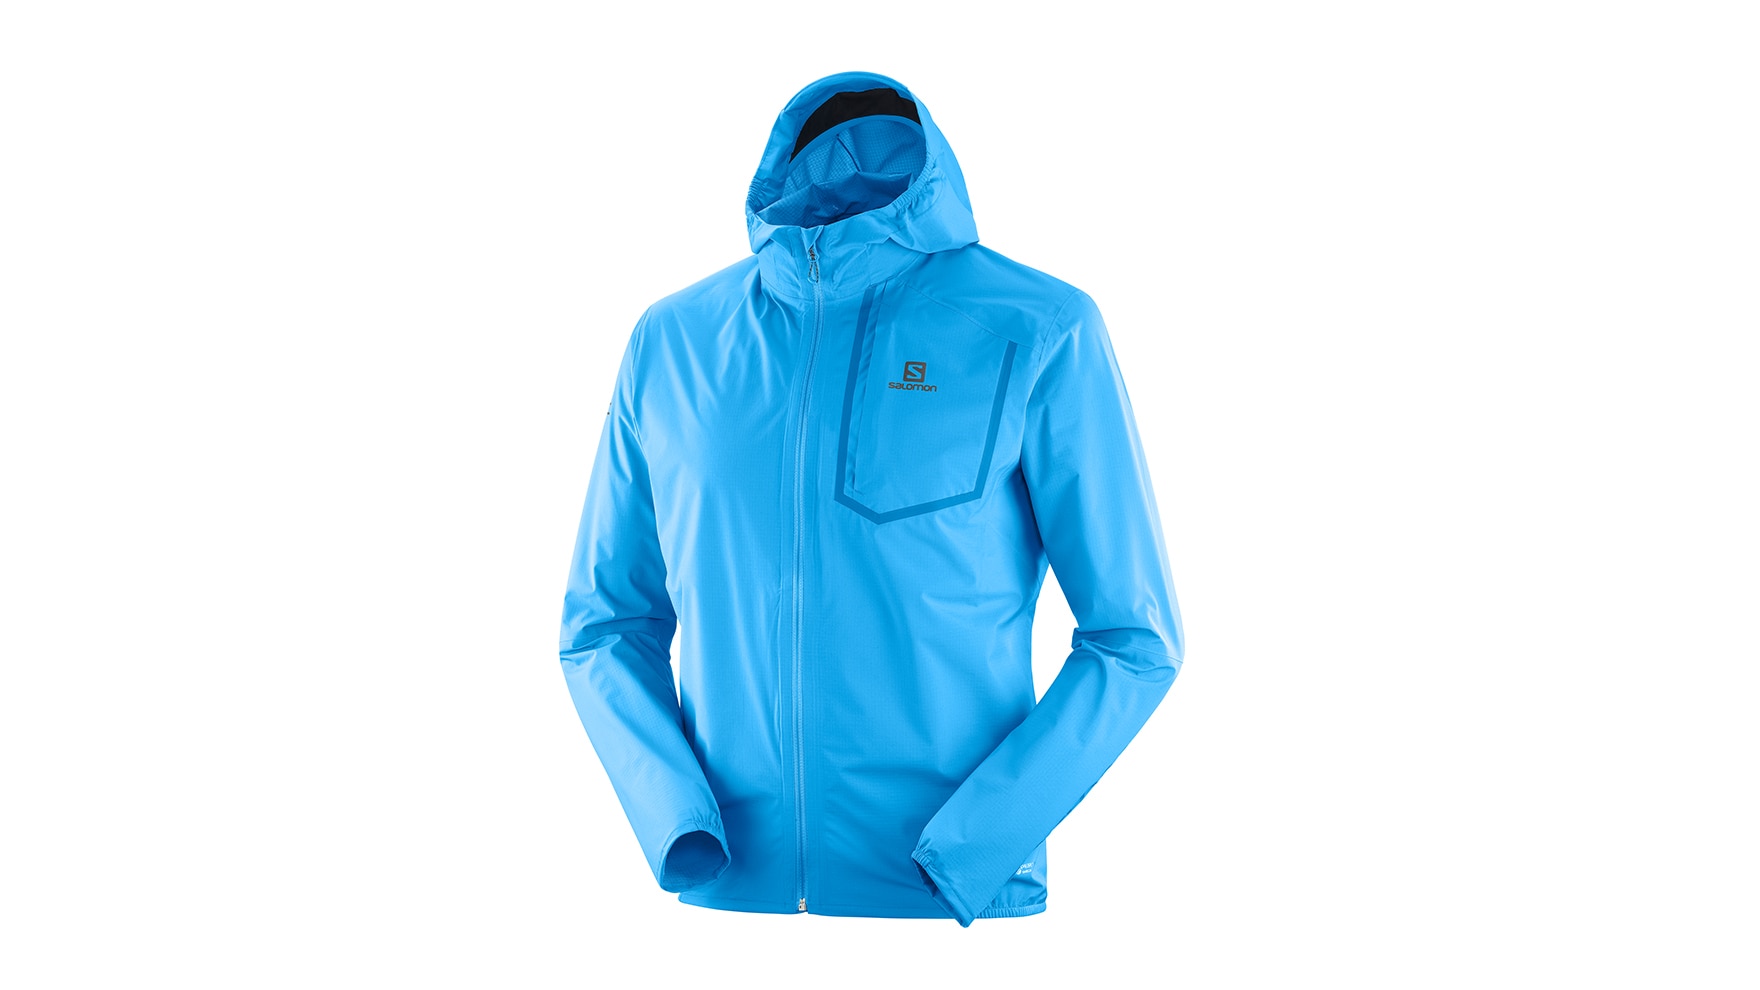 Die BONATTI PRO WATERPROOF-Jacke ist eine minimalistisch konzipierte Schutzschicht, die alle Anforderungen für das Laufen auf technischen Trails erfüllt.